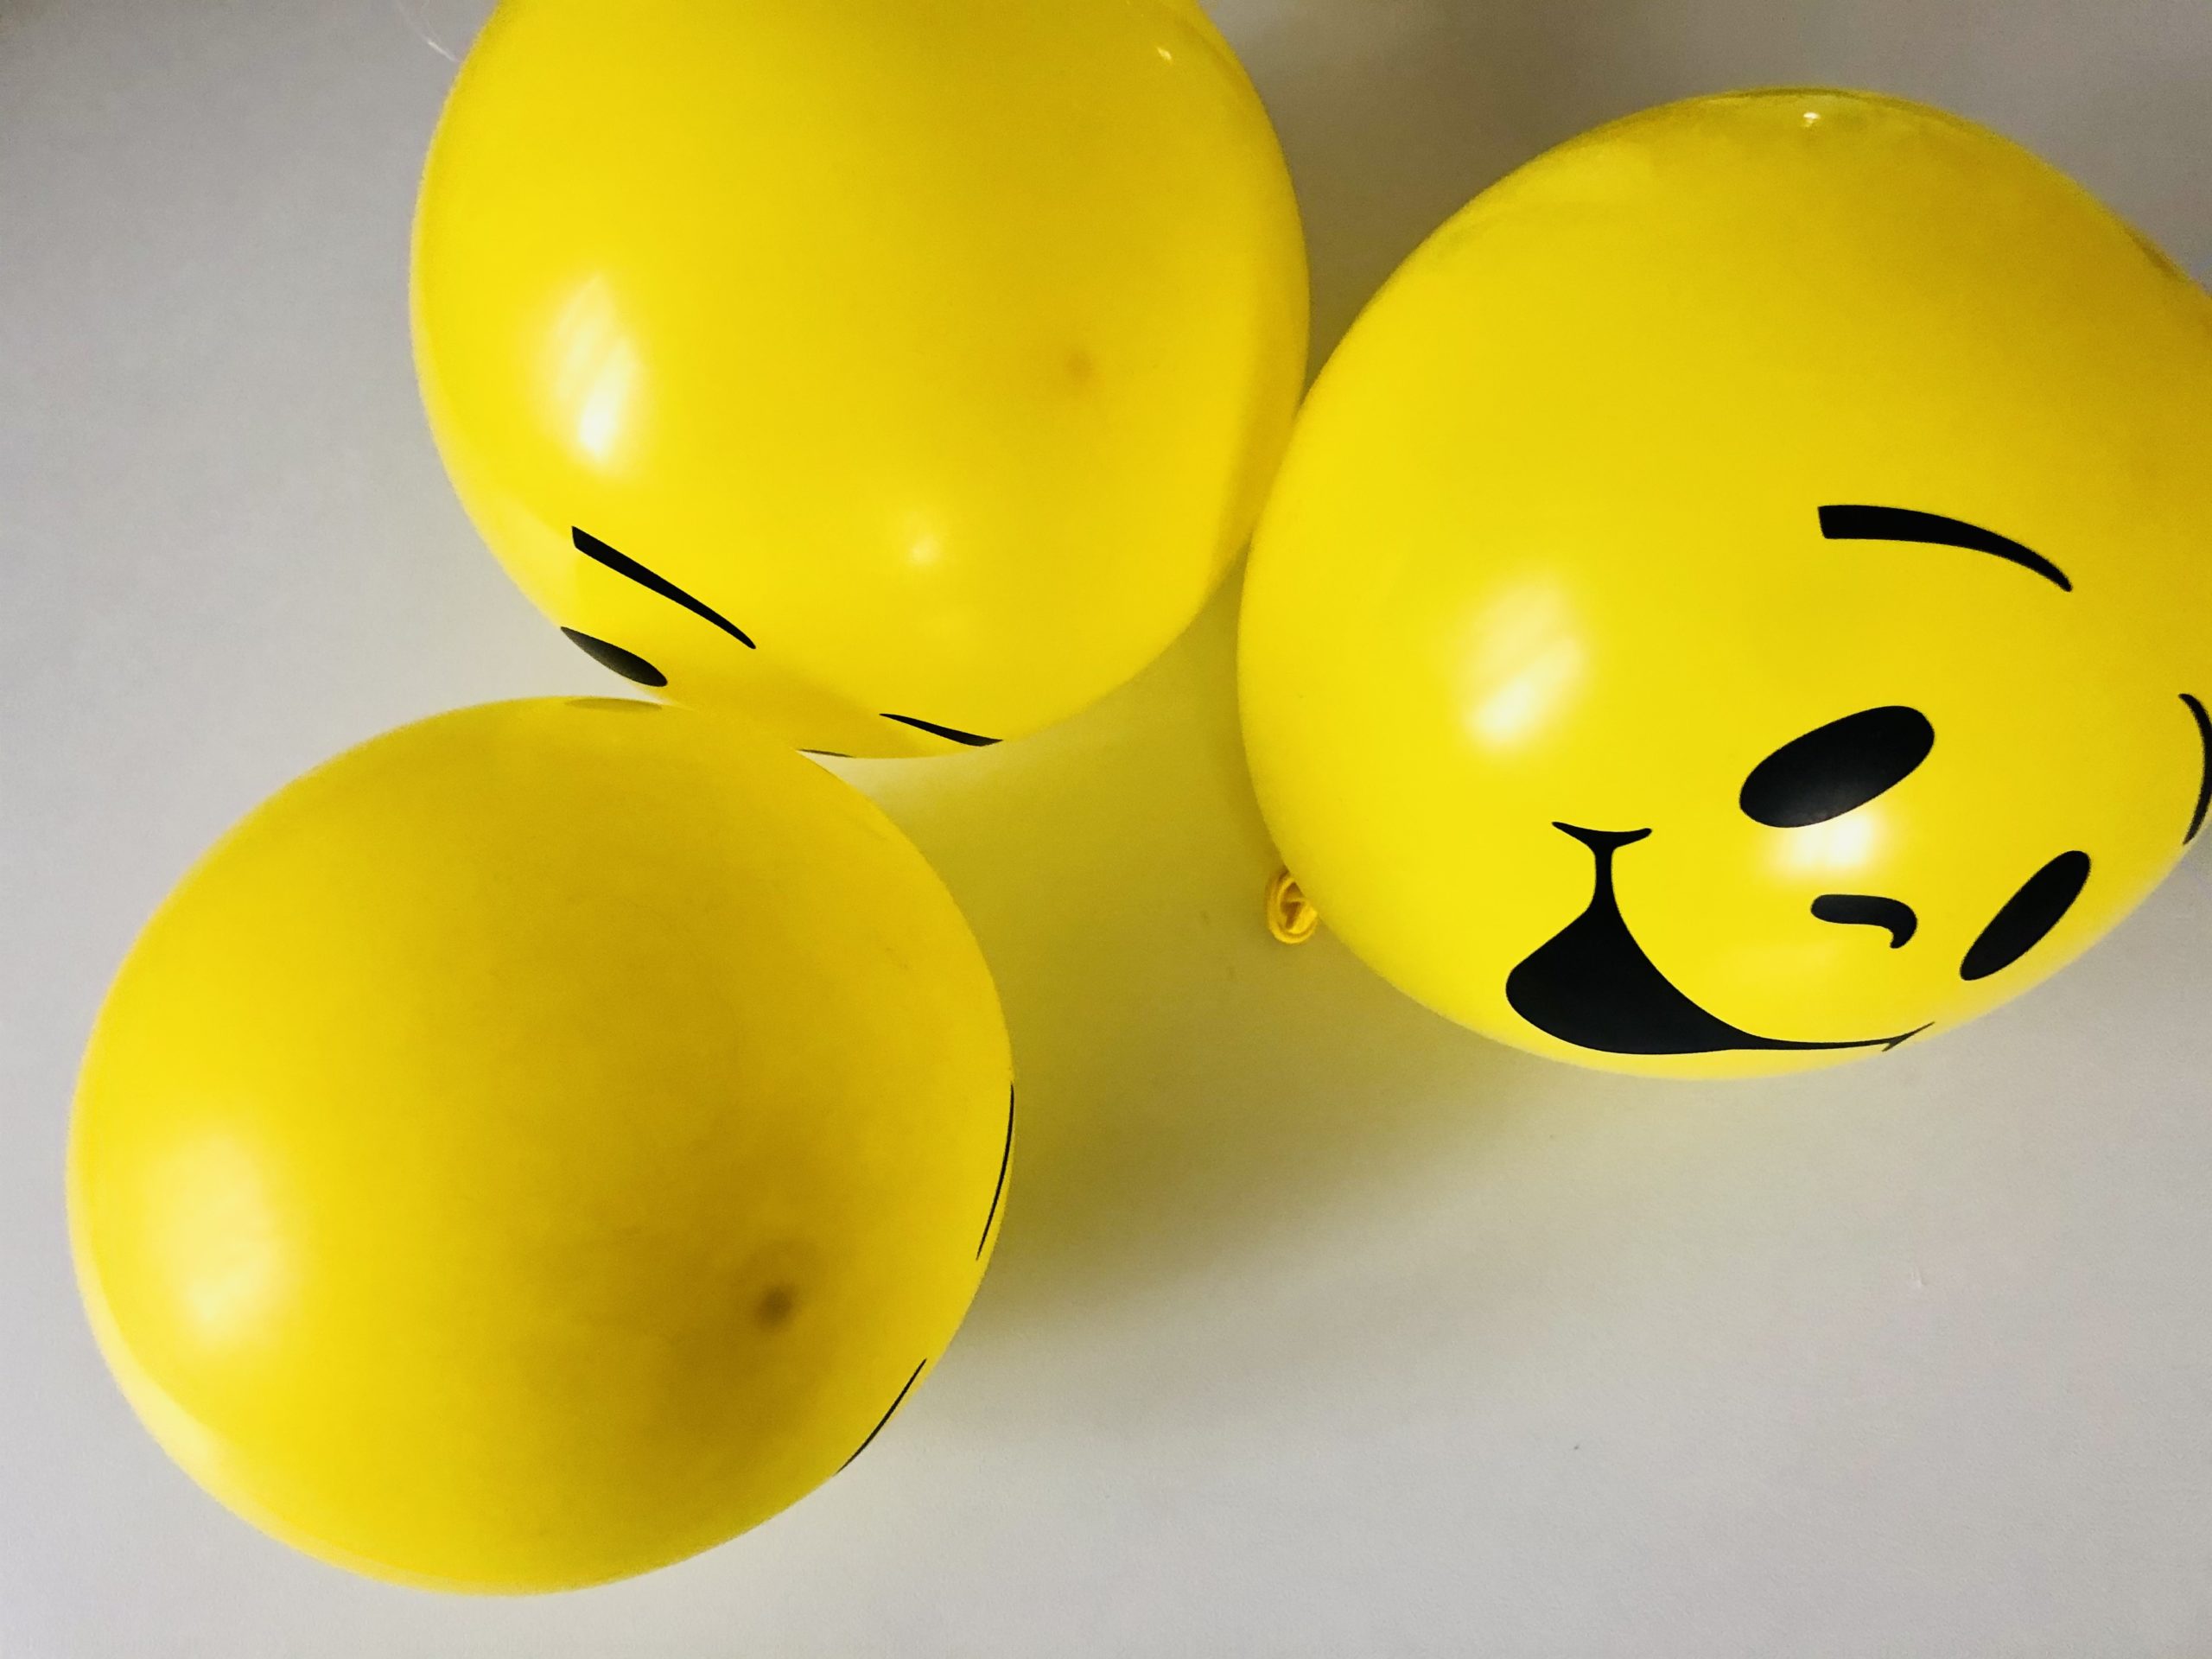 Bild zum Schritt 1 für das Bastel- und DIY-Abenteuer für Kinder: 'Pustet zuerst die Luftballons auf.'